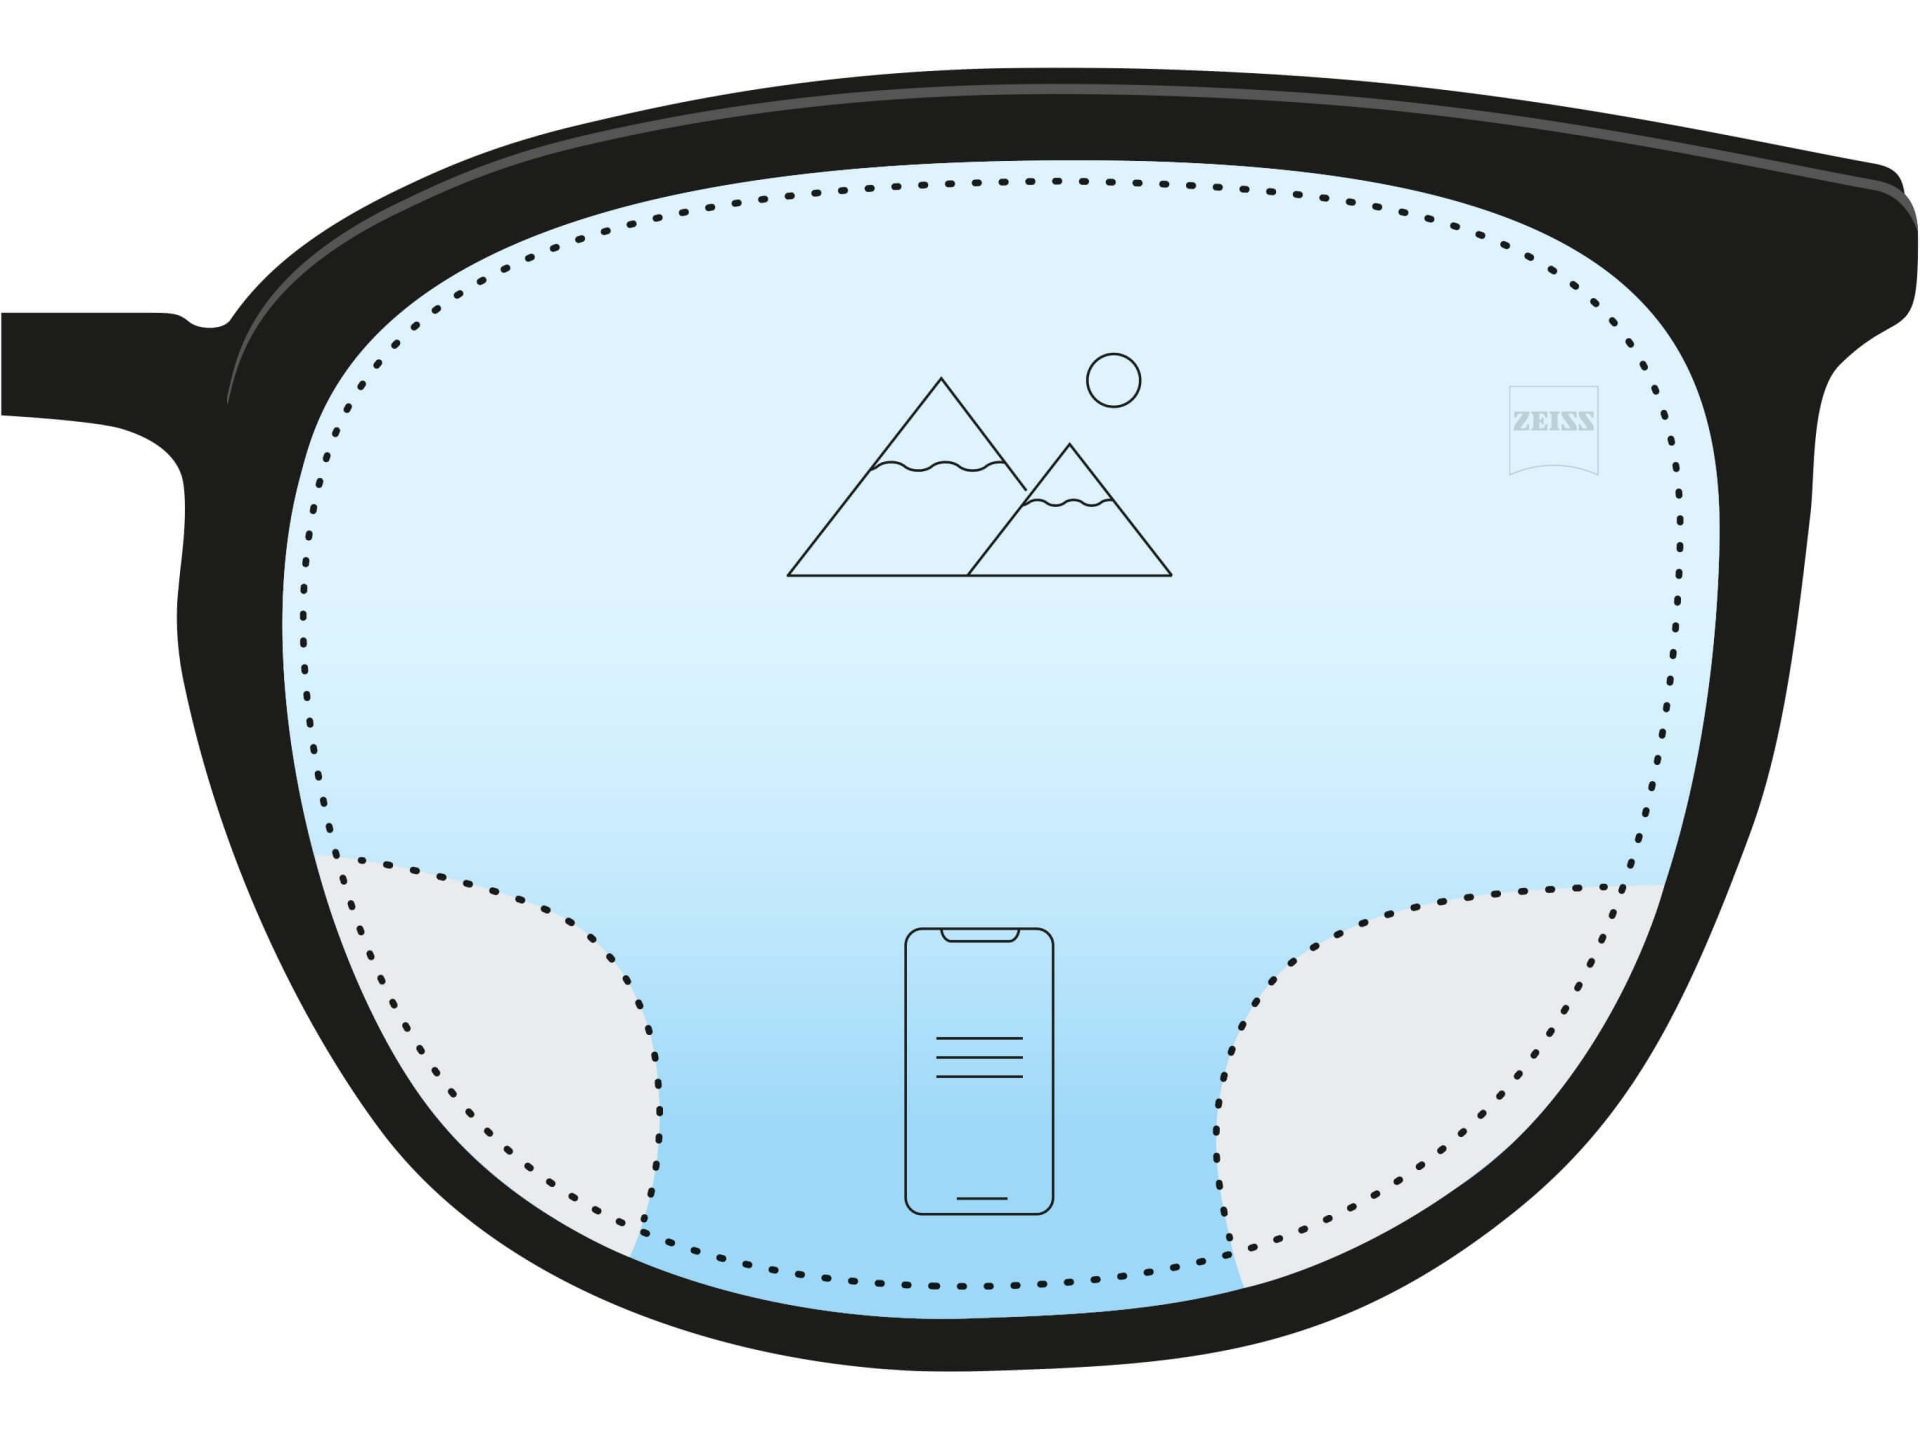 Une illustration d’un verre anti-fatigue. Deux icônes et un dégradé de couleur bleu foncé en bas et bleu clair en haut indiquent que la plus grande zone du verre corrige la vue à distance, mais qu’une petite zone en bas aide la vision de près.